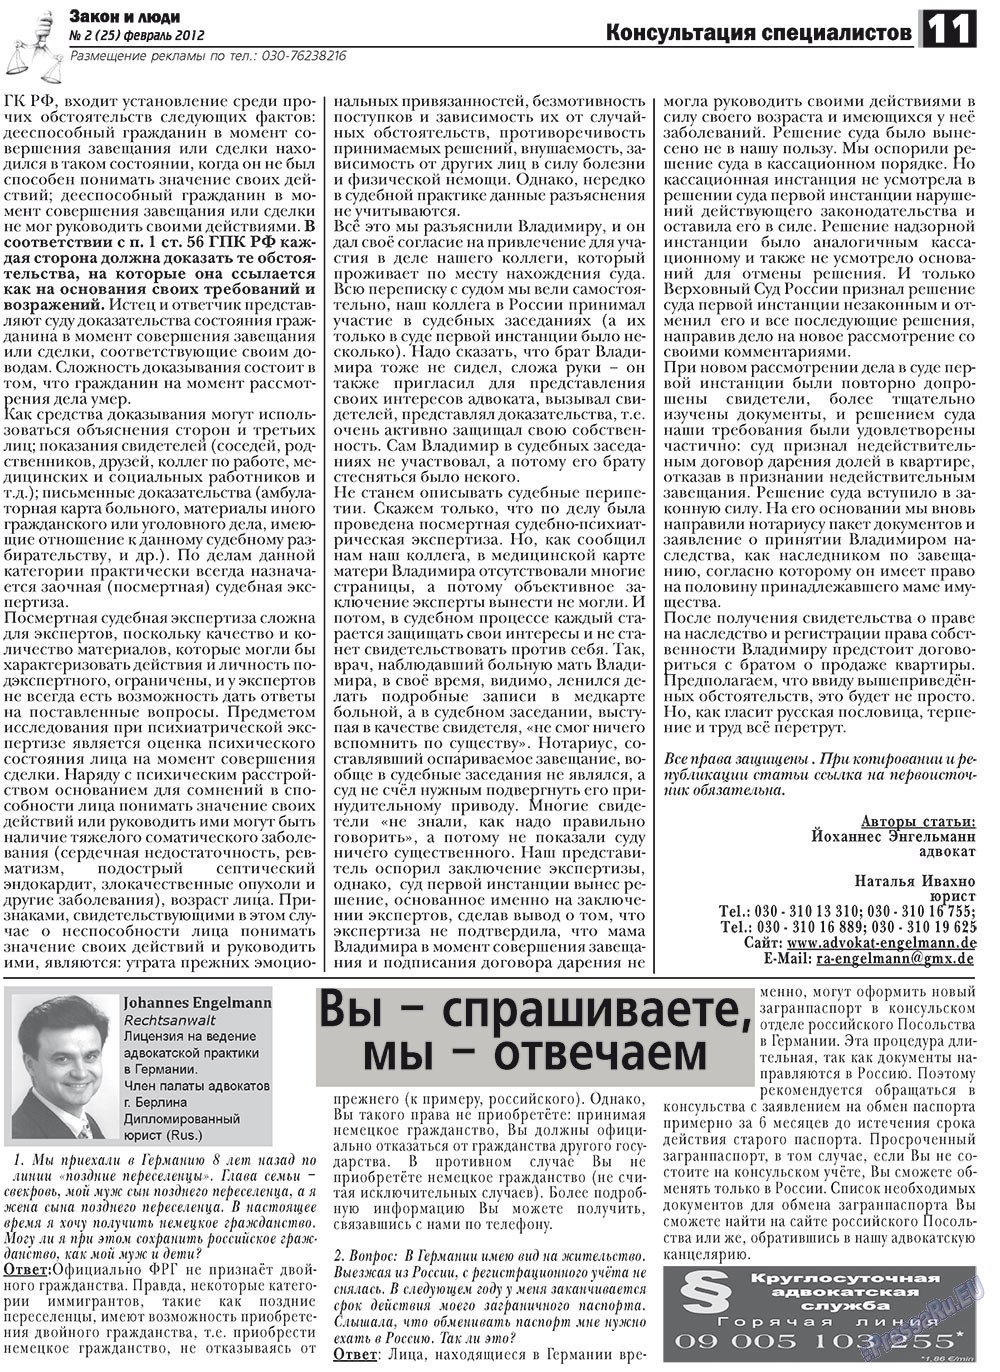 Закон и люди, газета. 2012 №2 стр.11